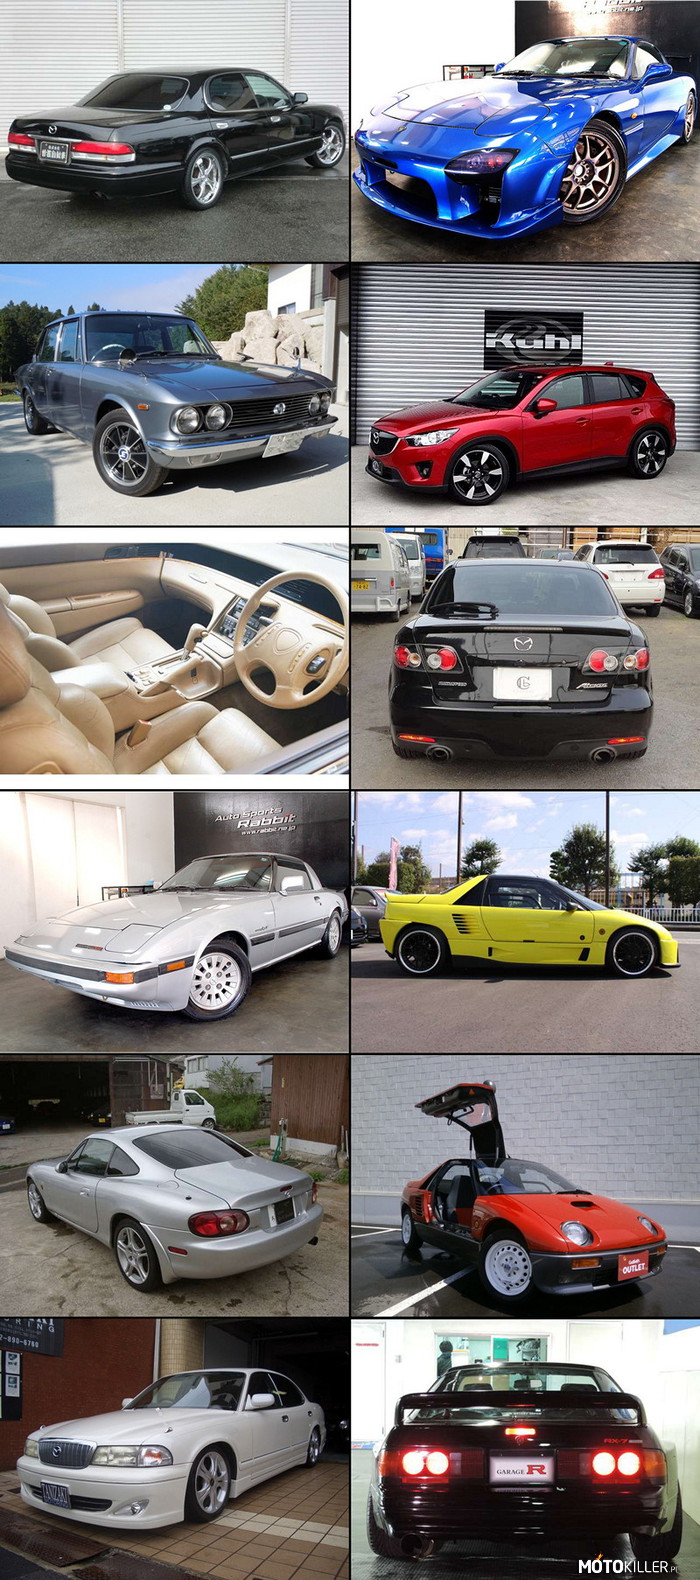 Japońskie serwisy z ogłoszeniami - Mazda – To tylko wybrane fotki. Między innymi: Eunos Cosmo, MX-5 Coupe, Familia 1500, Efini RX-7, AZ-1 itd. 
Dlatego właśnie lubię przeglądać takie serwisy, zawsze trafiają się ciekawe i unikalne perełki. W dzisiejszej wrzucie, samochody Mazdy. 